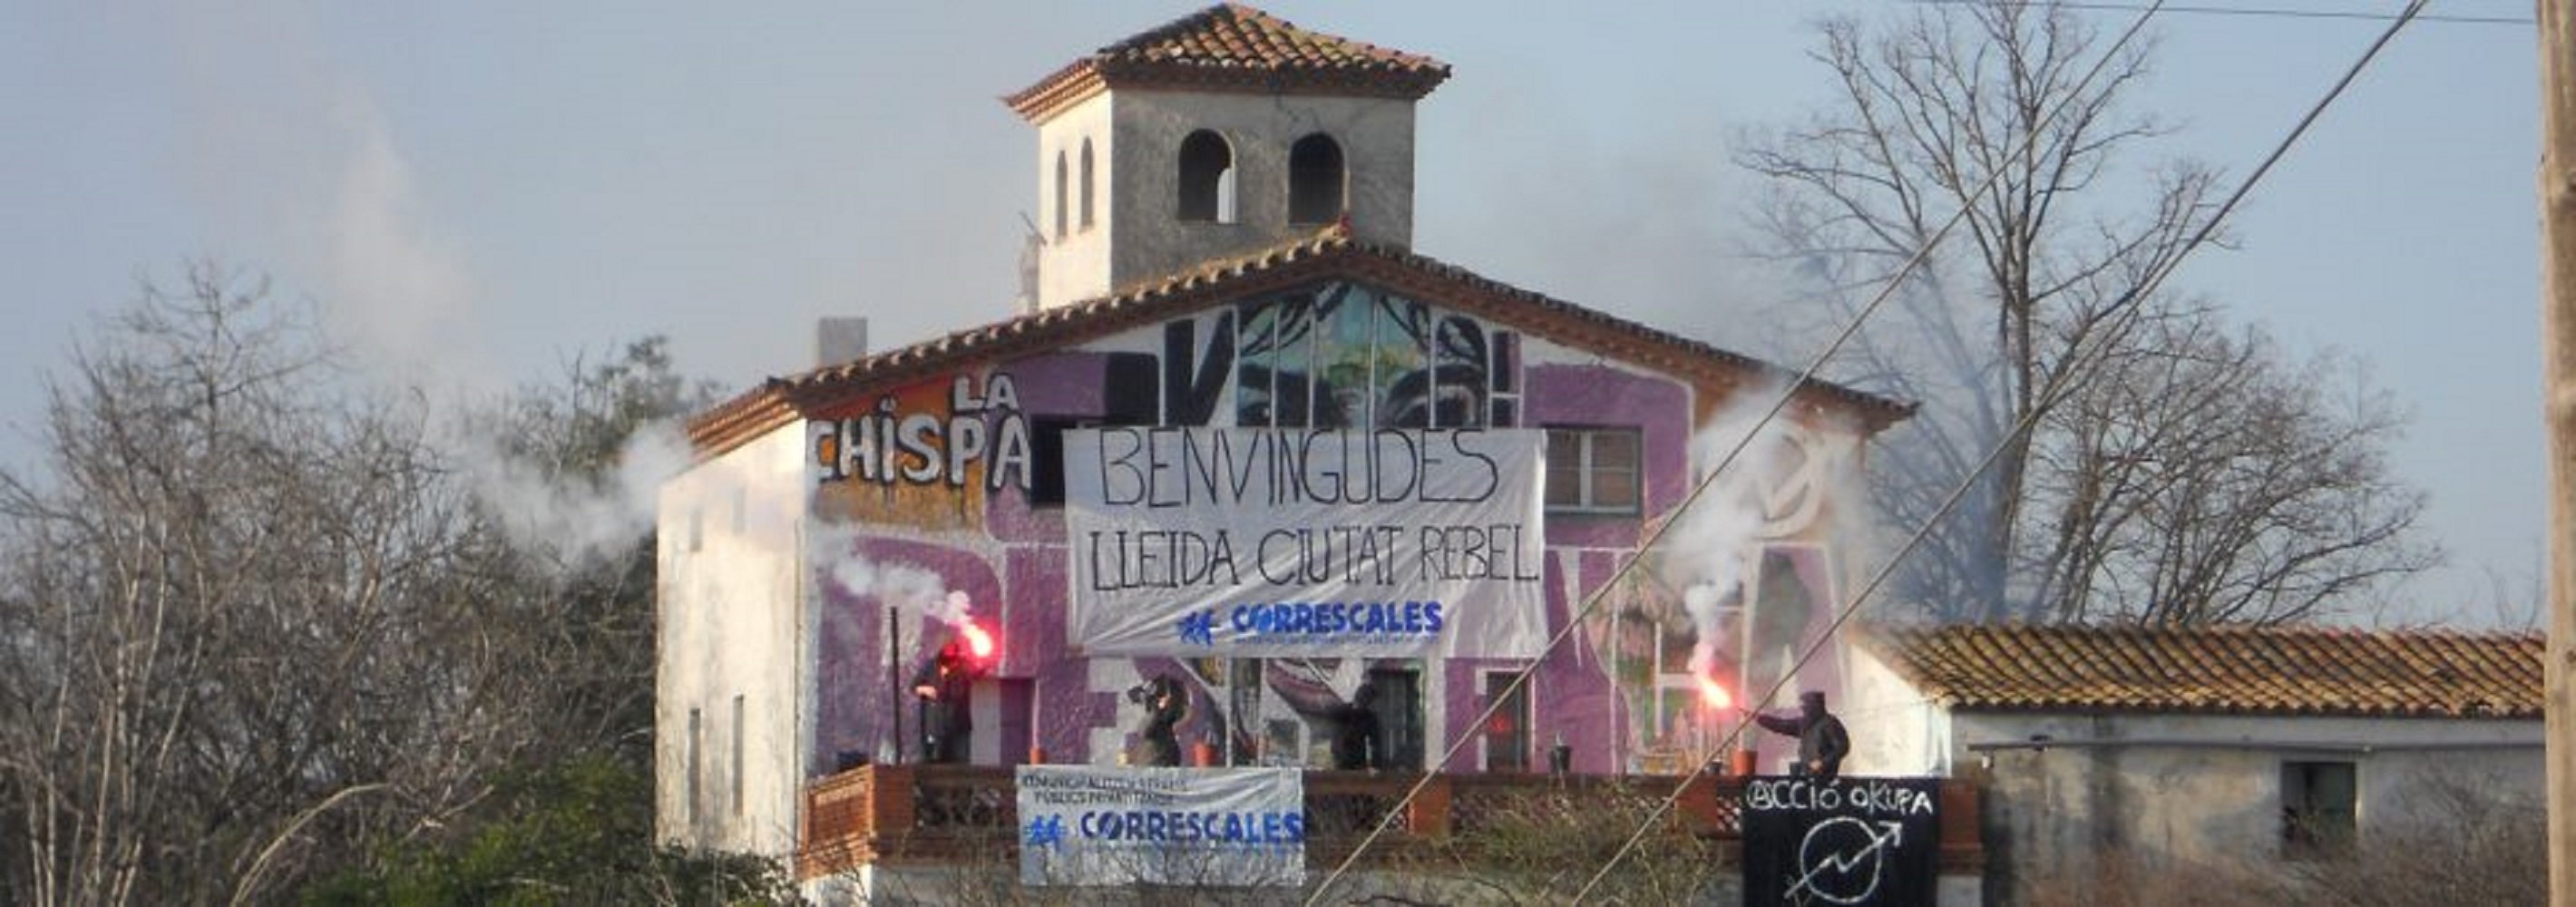 Los Mossos desalojan el centro social okupado 'La Chispa' de Lleida